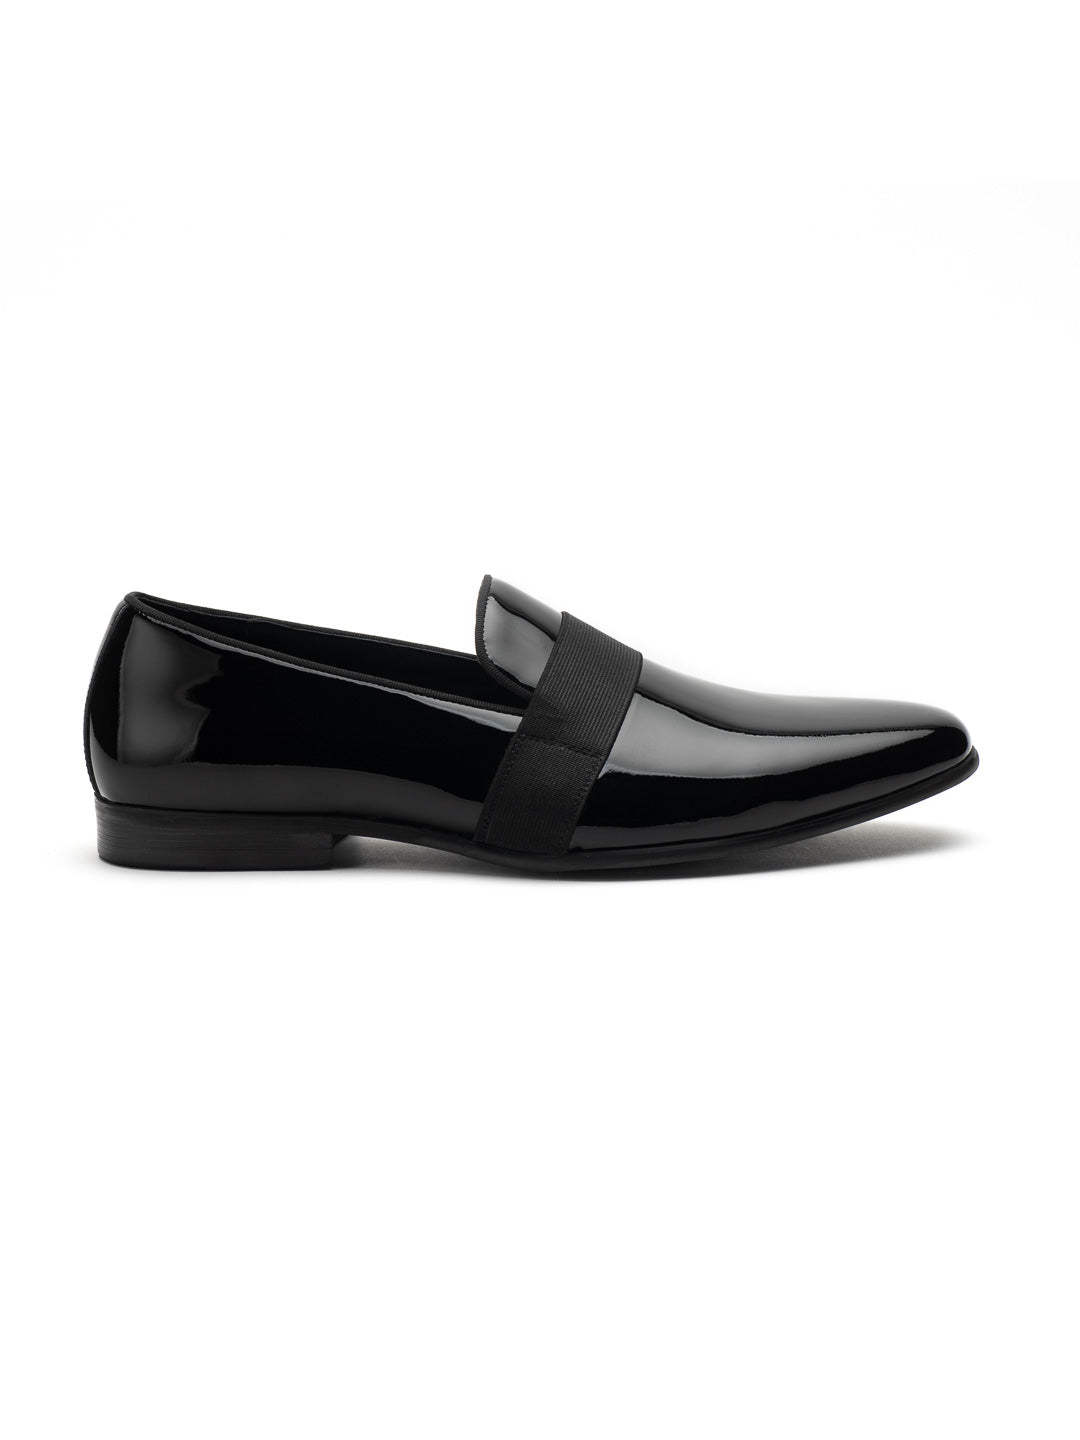 Premium Footwear Brand for Men and Women | Heel & Buckle London – HEEL ...